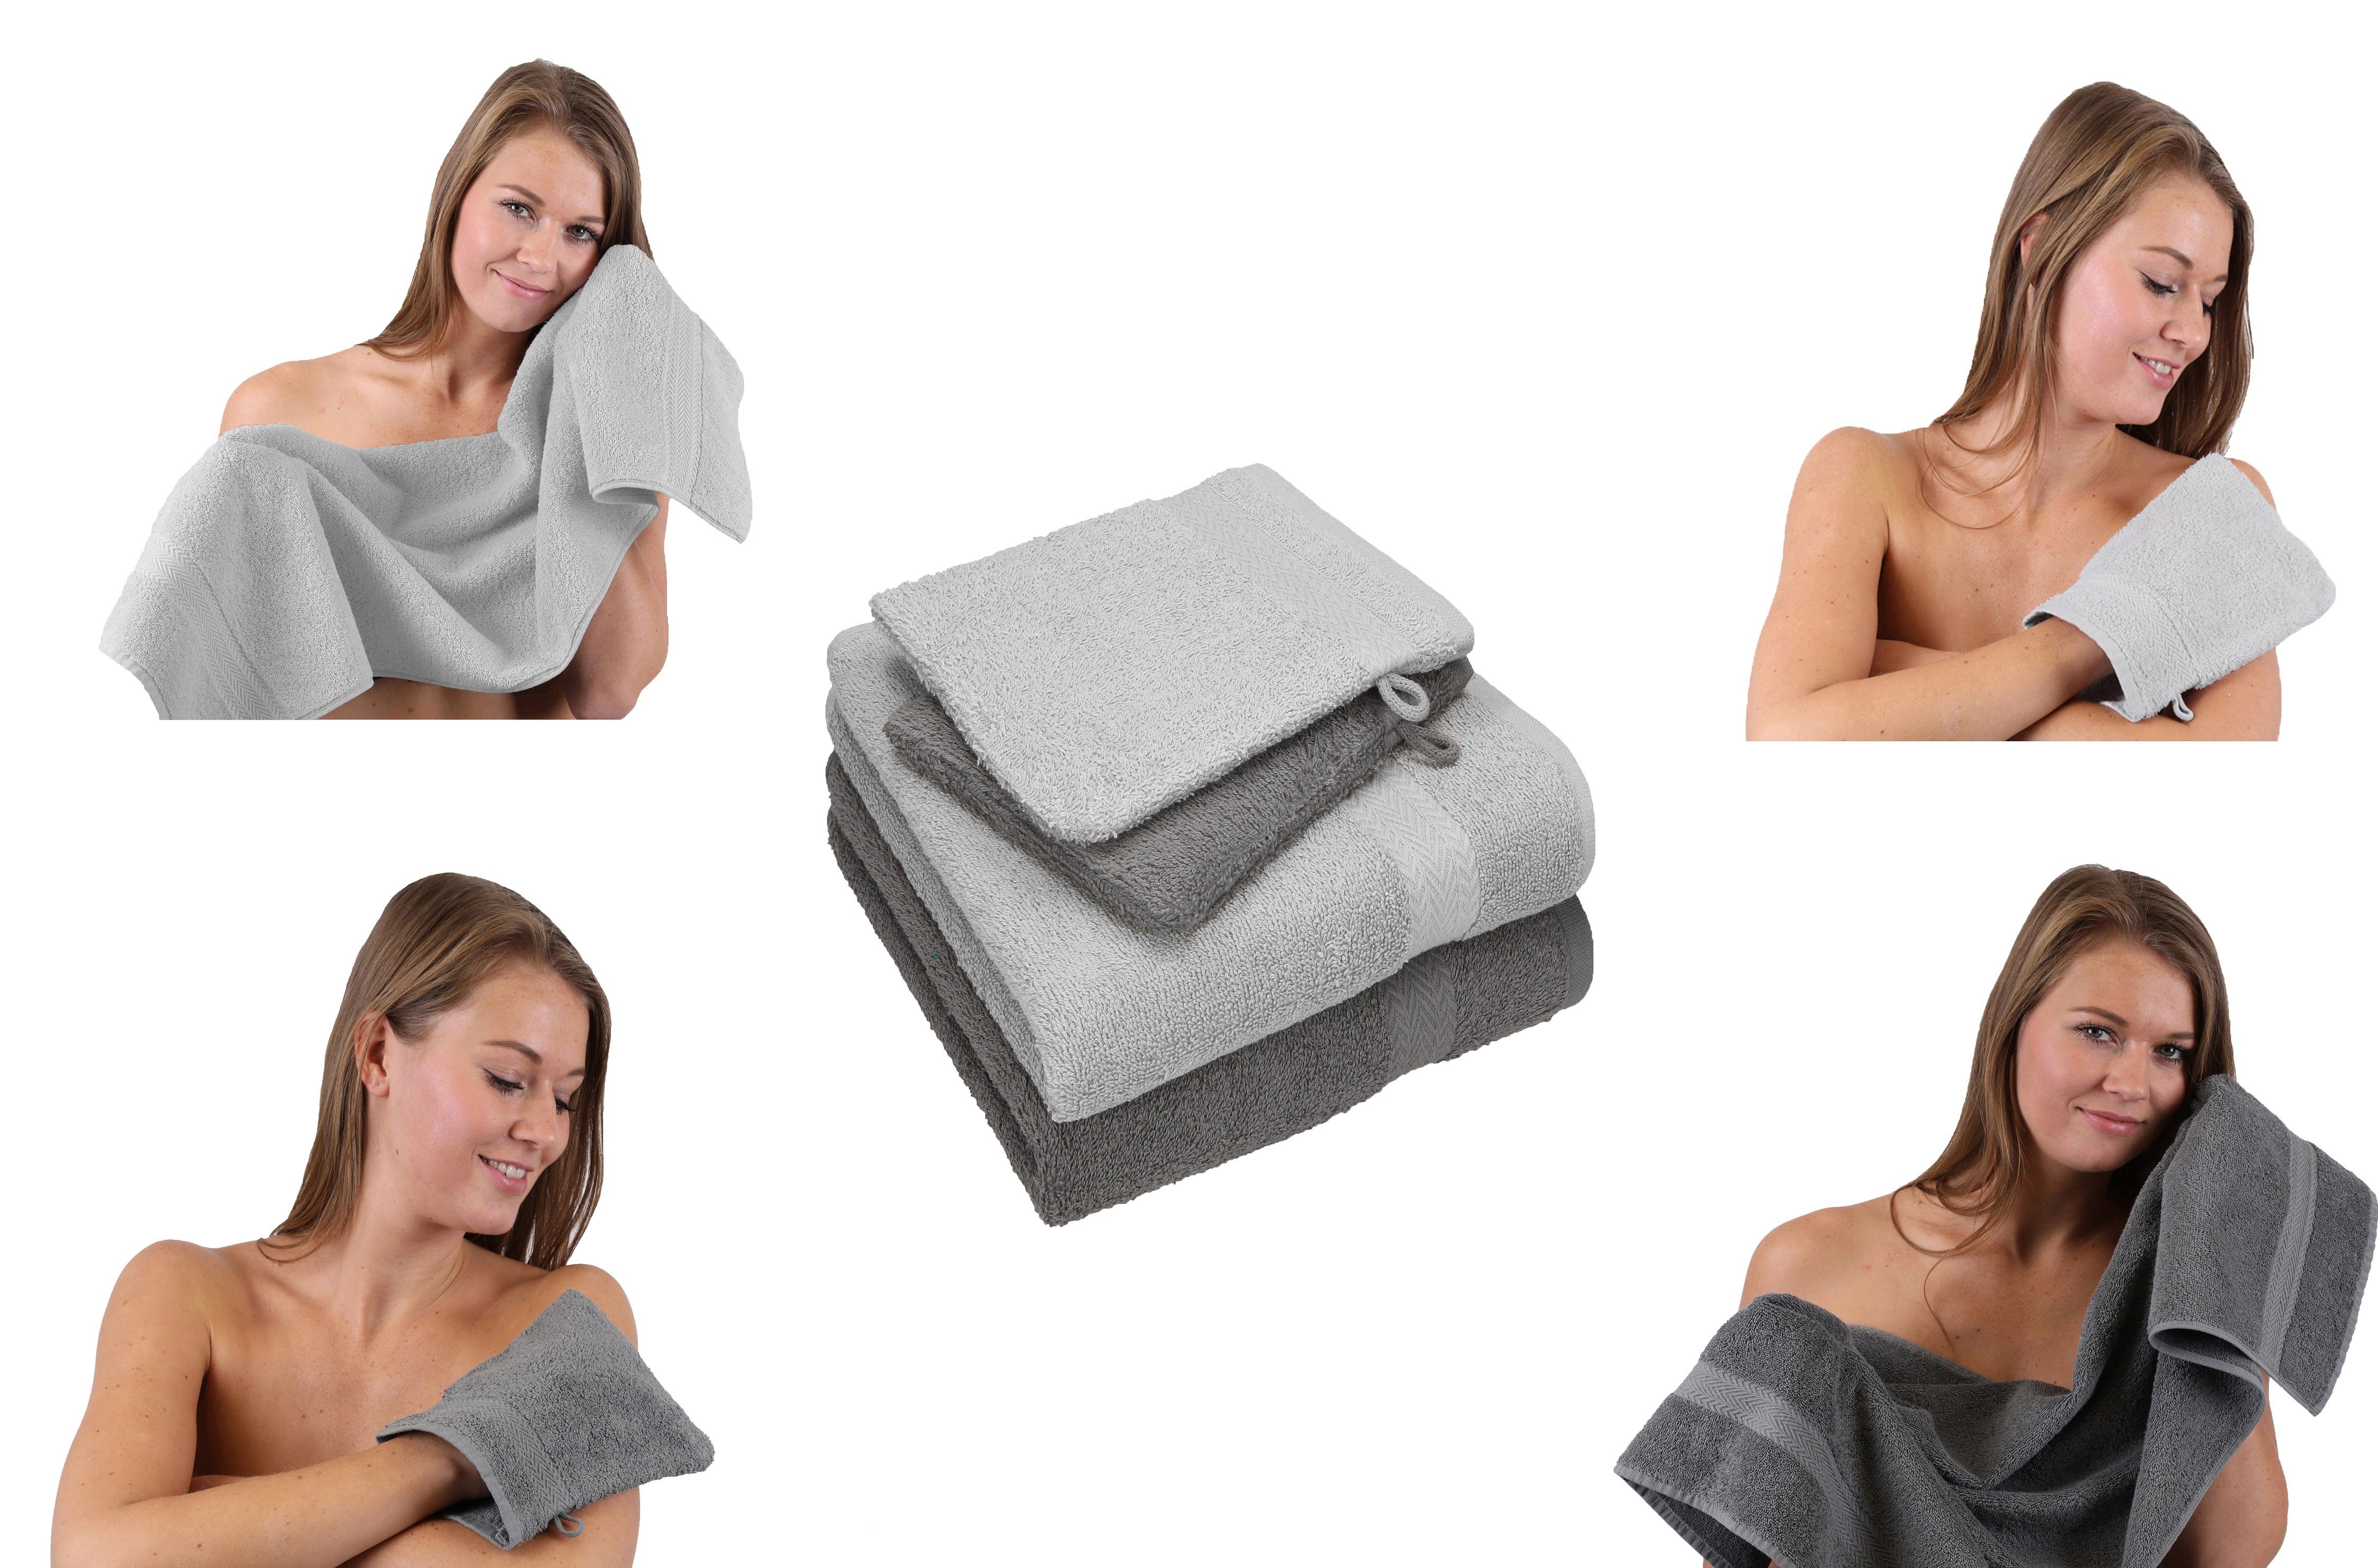 Betz Handtuch Set 4 Happy Handtücher Set 100% 2 Baumwolle silber Pack 2 grau Waschhandschuhe, TLG. 100% - Baumwolle Handtuch anthrazit grau